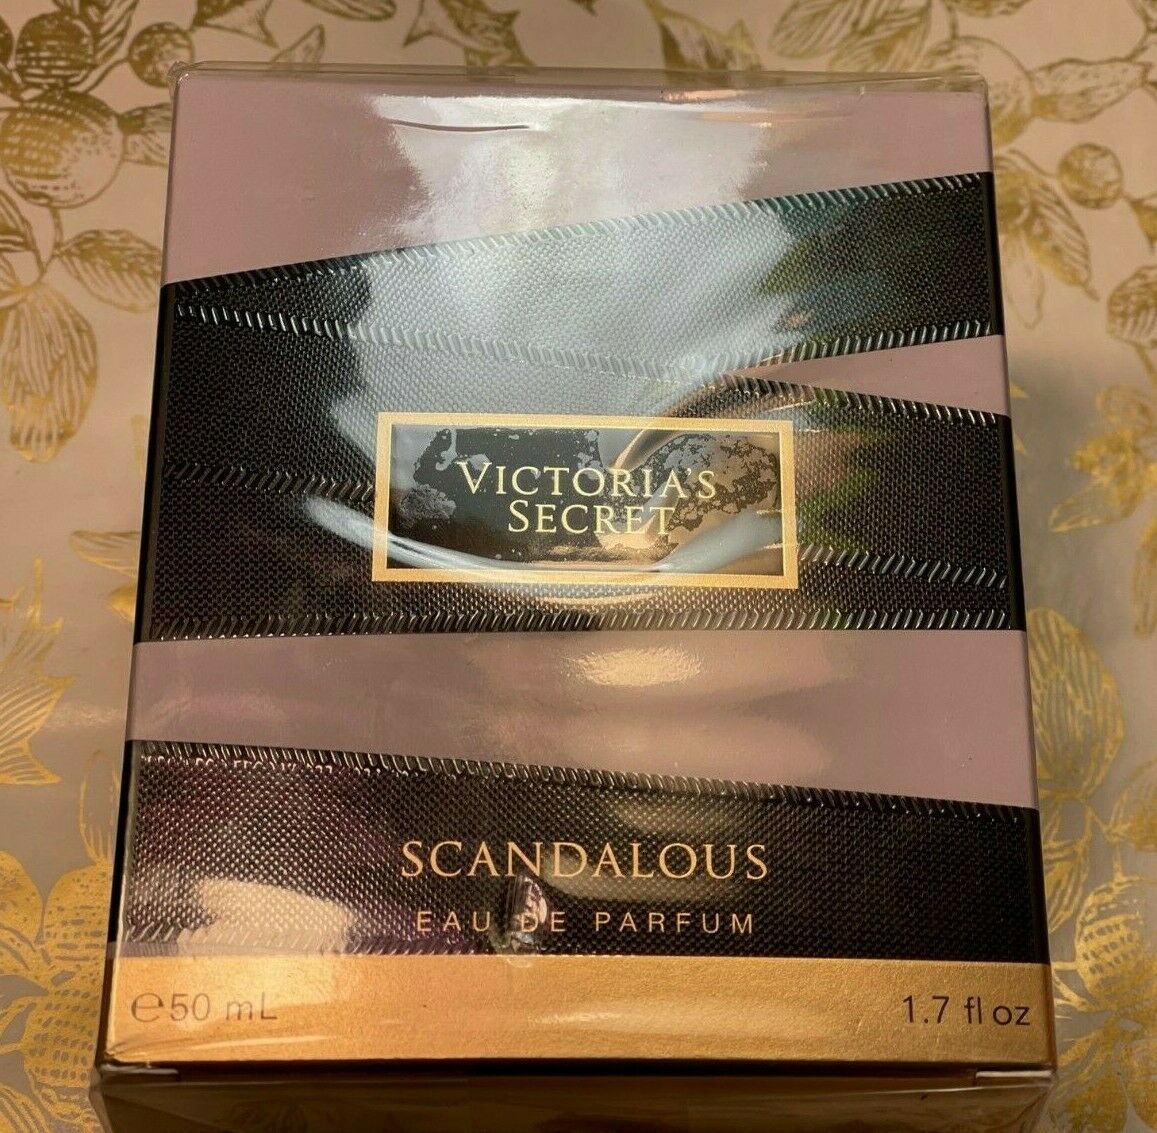 VICTORIA'S SECRET scandalous Eau De Parfum 1.7 fl oz 50 ml